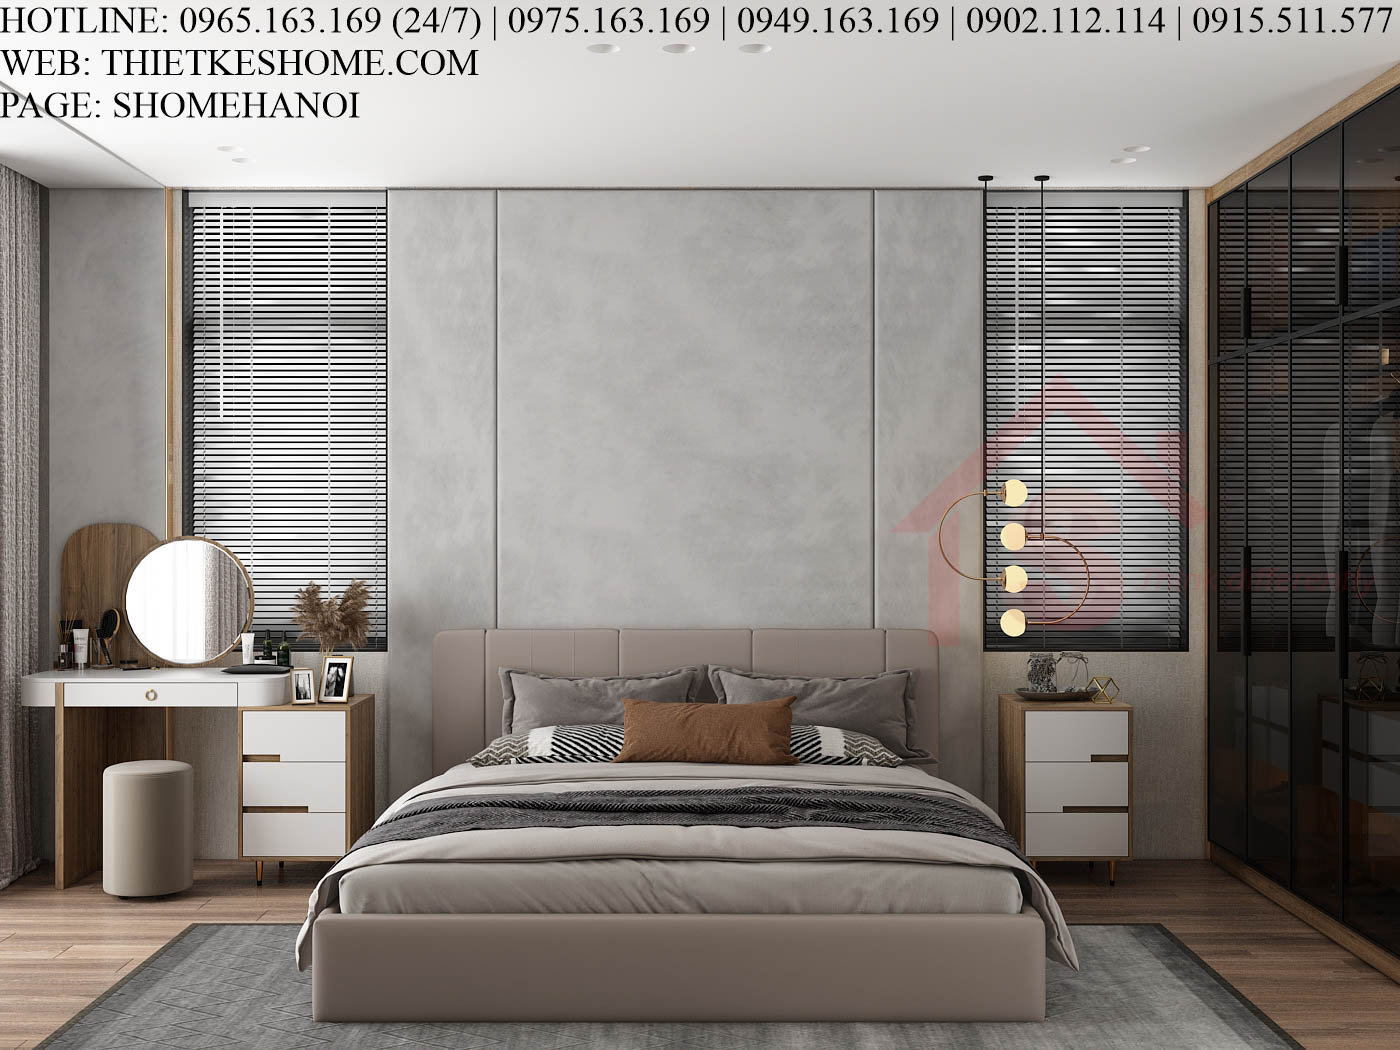 S HOME Combo mẫu nội thất phòng ngủ đẹp hiện đại tiện dụng SHOME6818